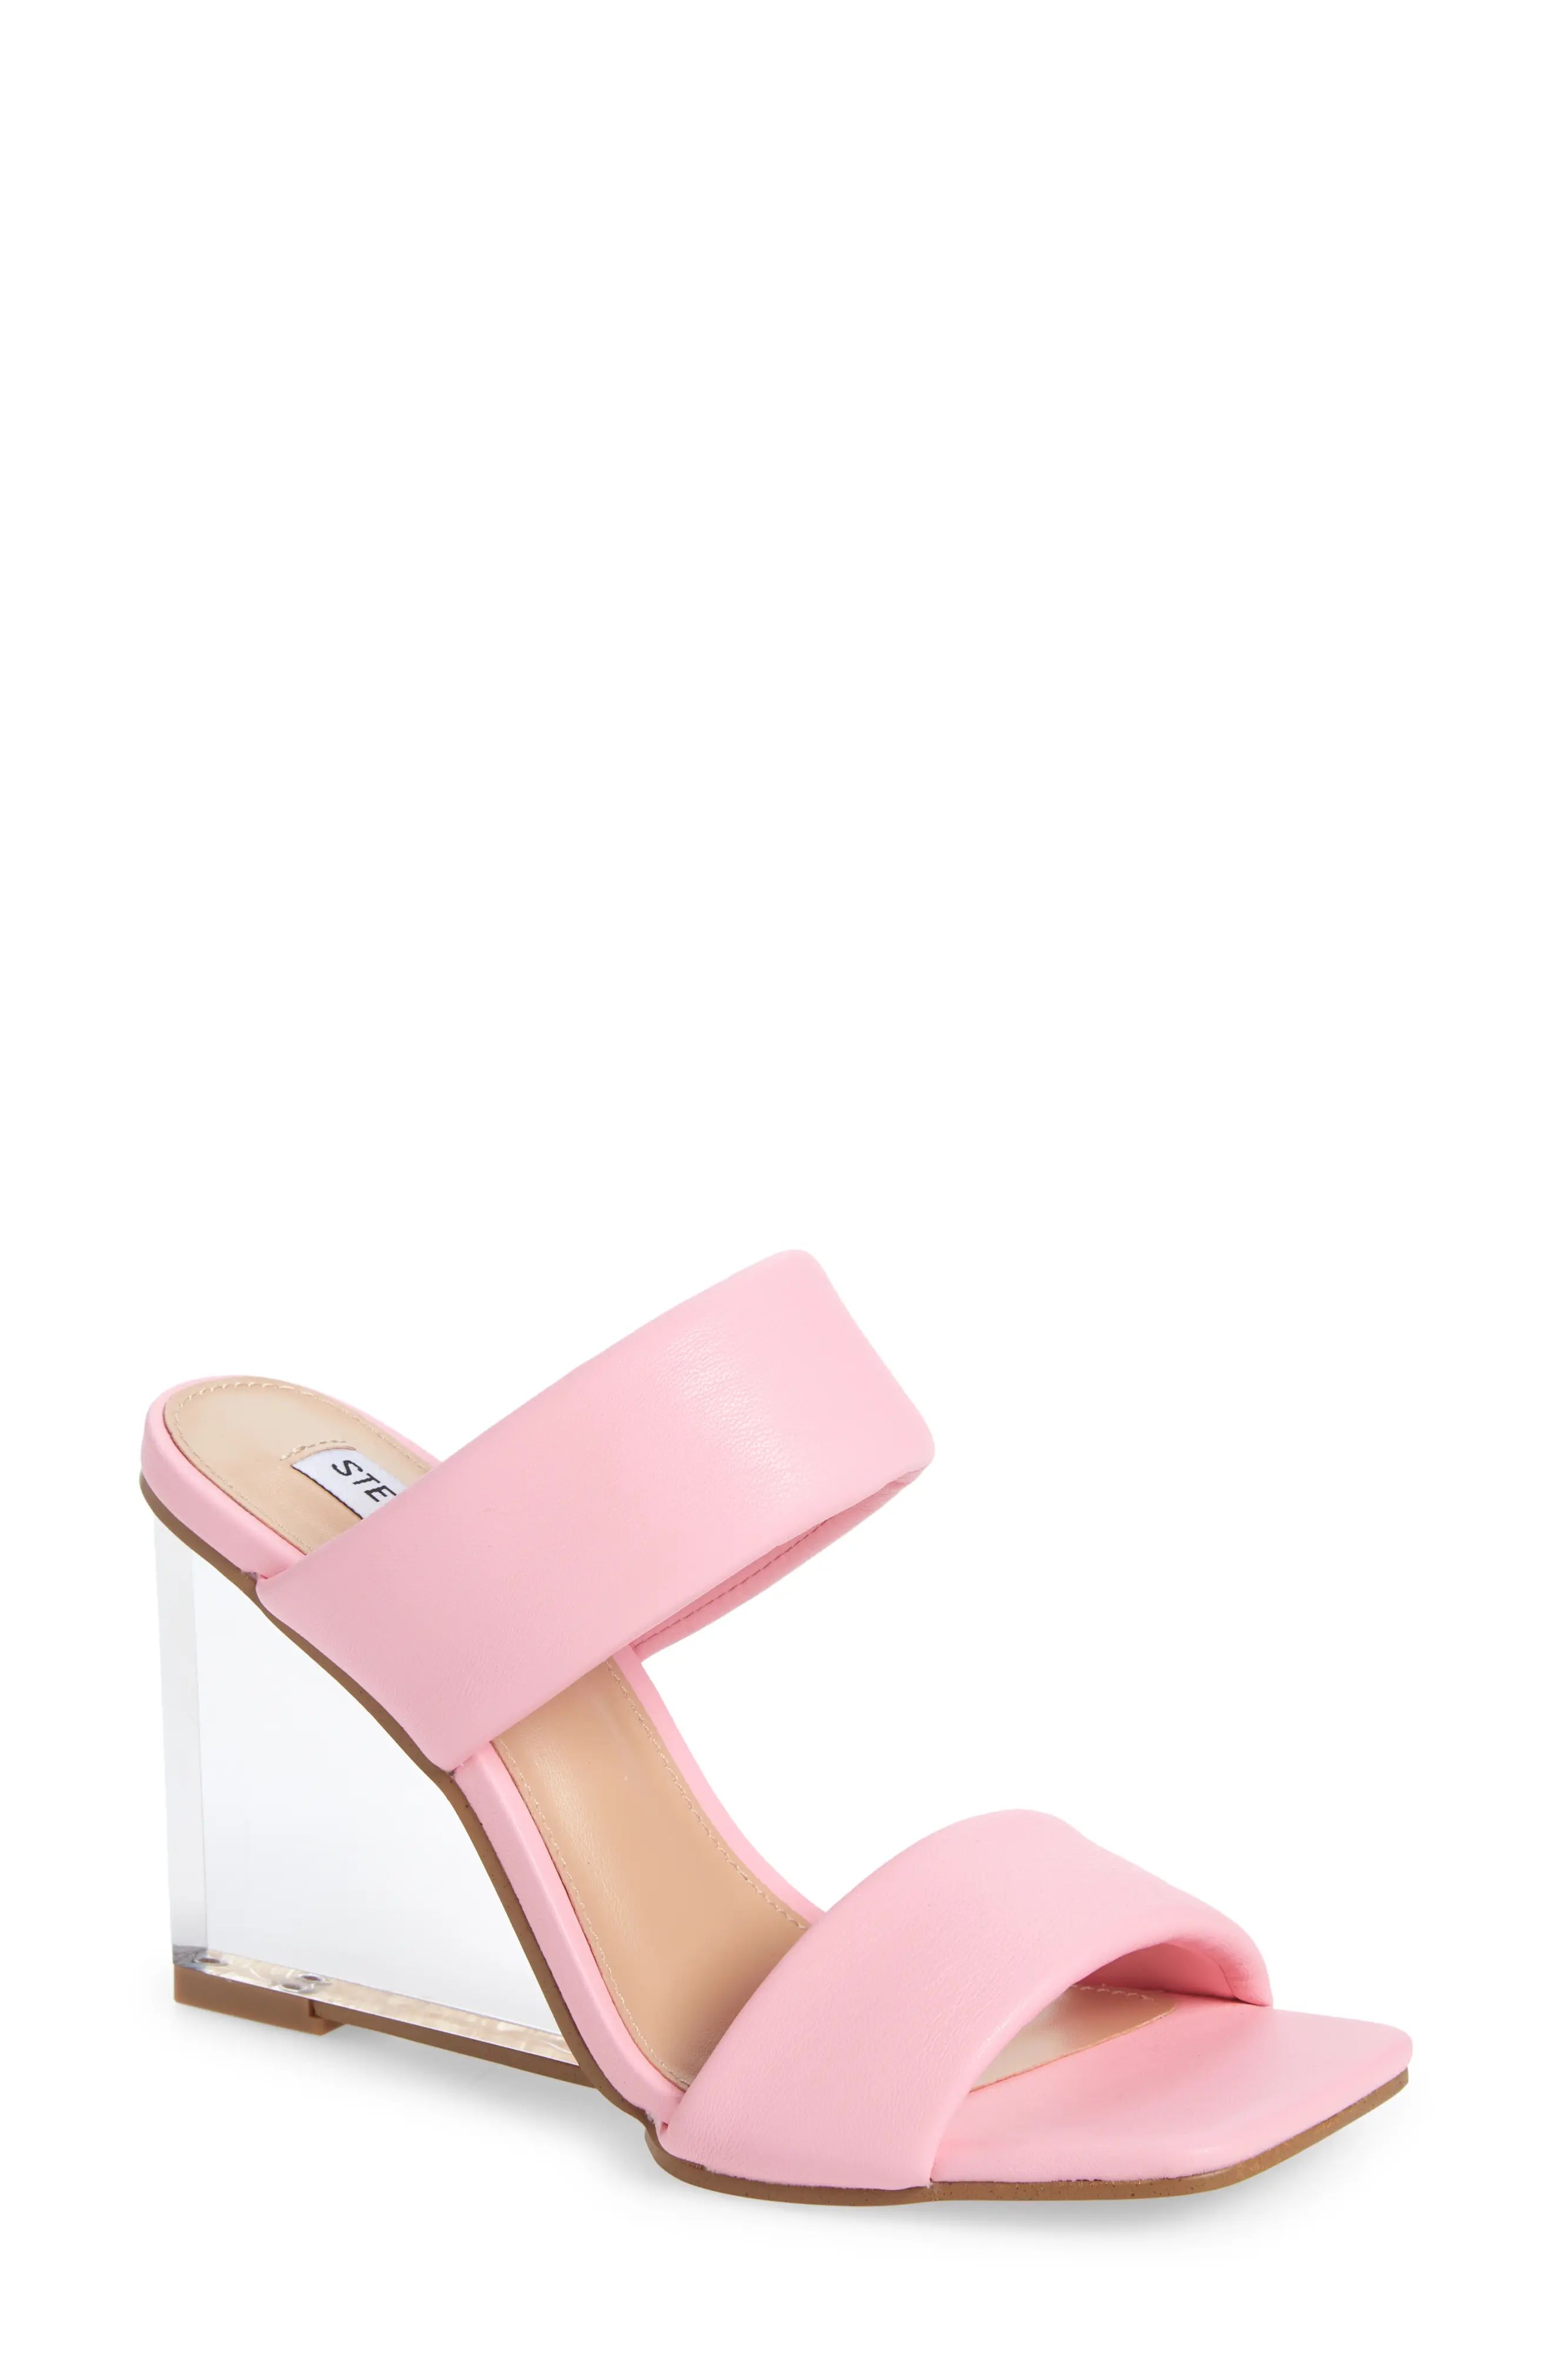 Women's Steve Madden Isa Wedge Slide Sandal, Size 8.5 M - Pink | Nordstrom